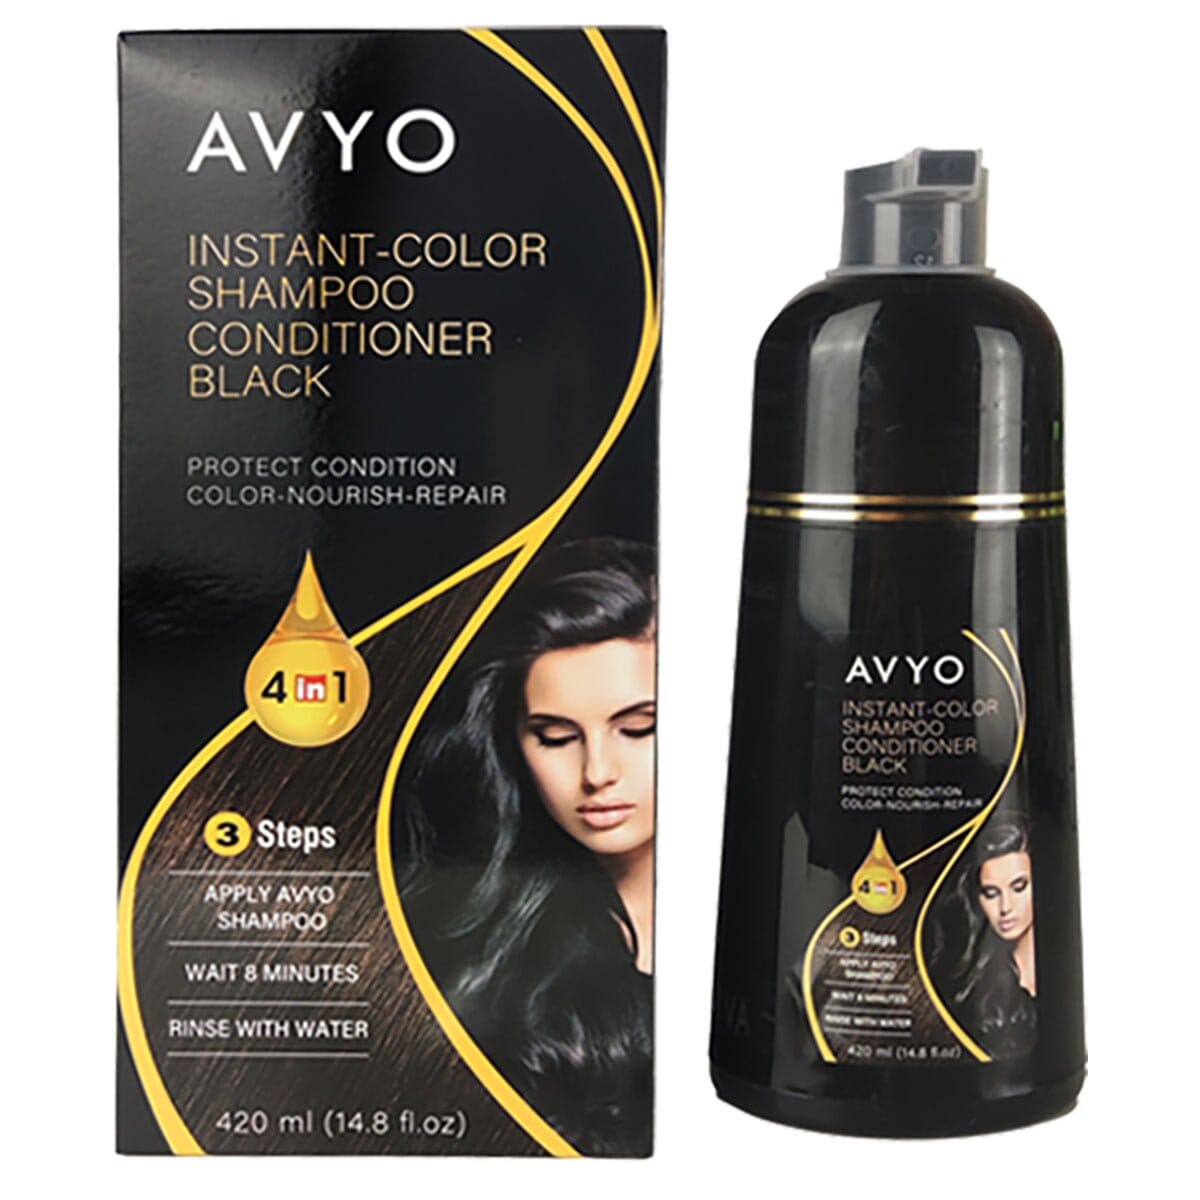 Black | Instant-Color Shampoo Conditioner | 4 in 1 | 420 mL | AVYO SHAMPOO AVYO 